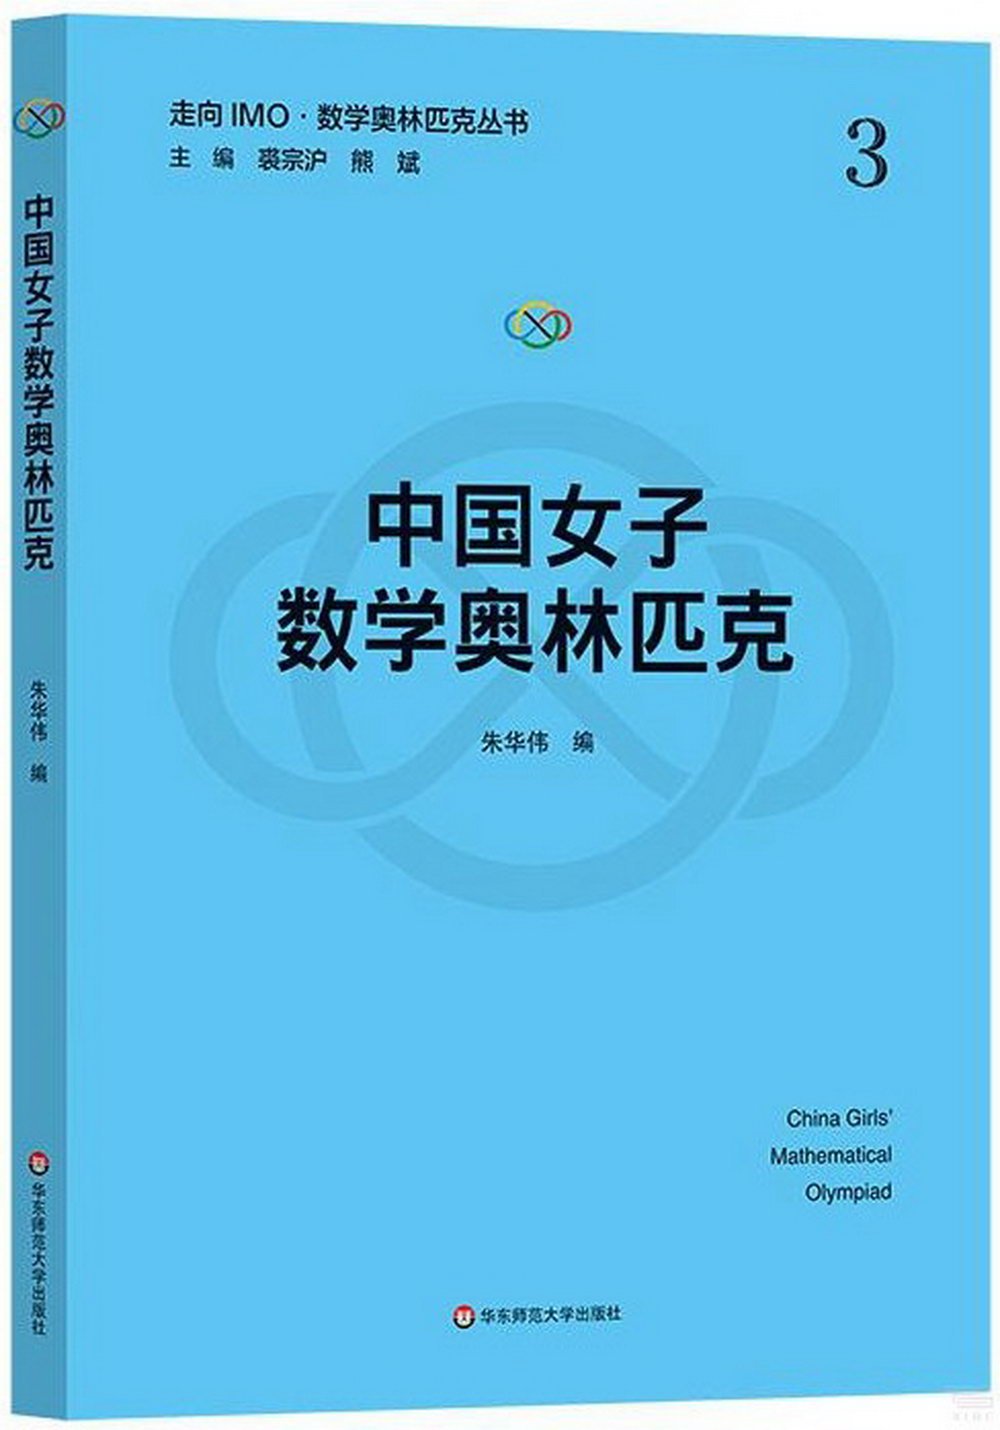 中國女子數學奧林匹克